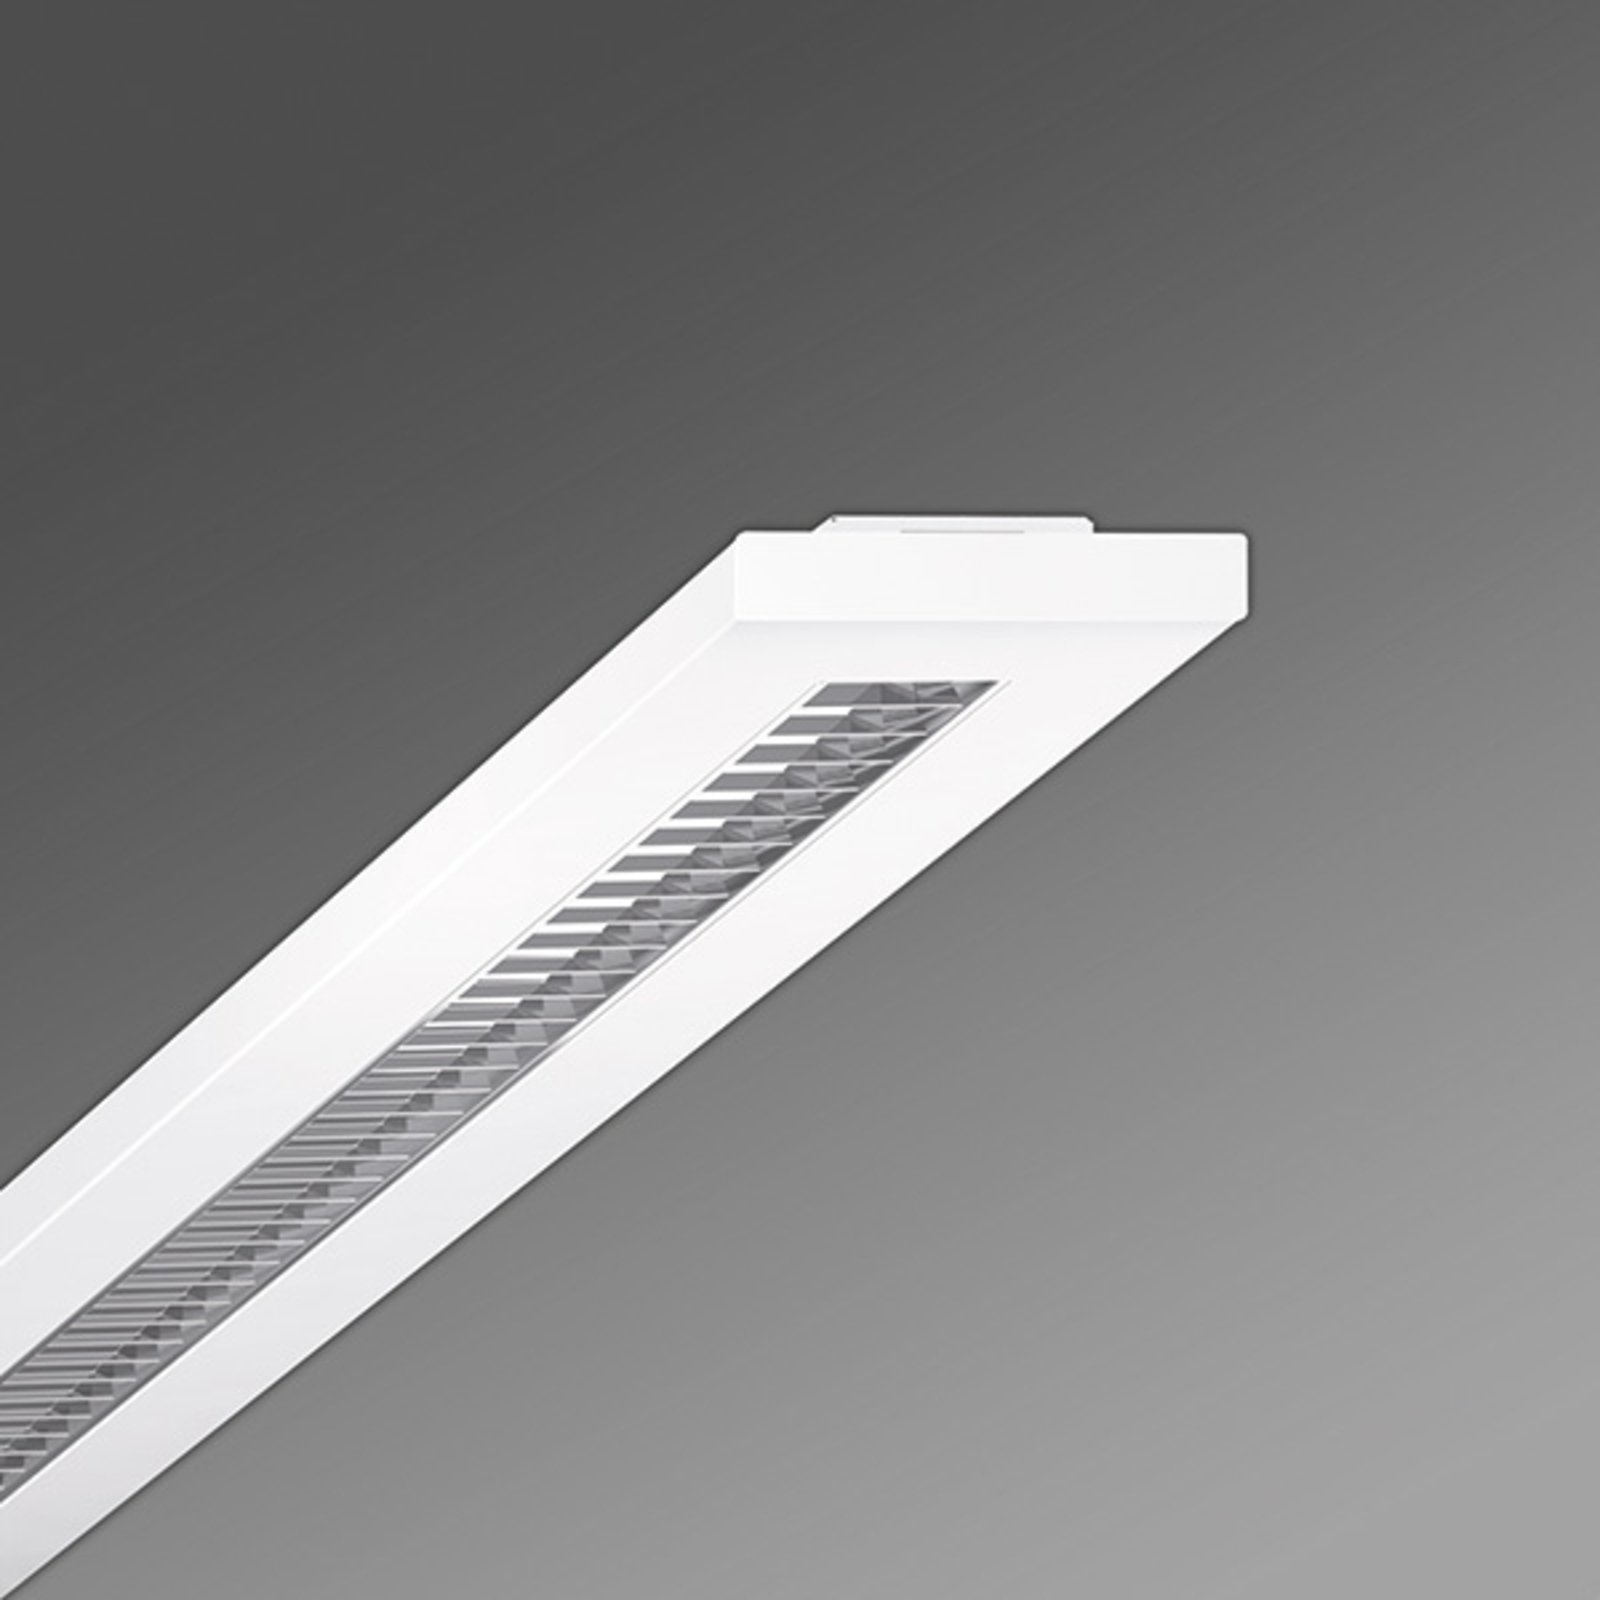 LED-Rasterleuchte Stail SAX Parabolraster 1200-1